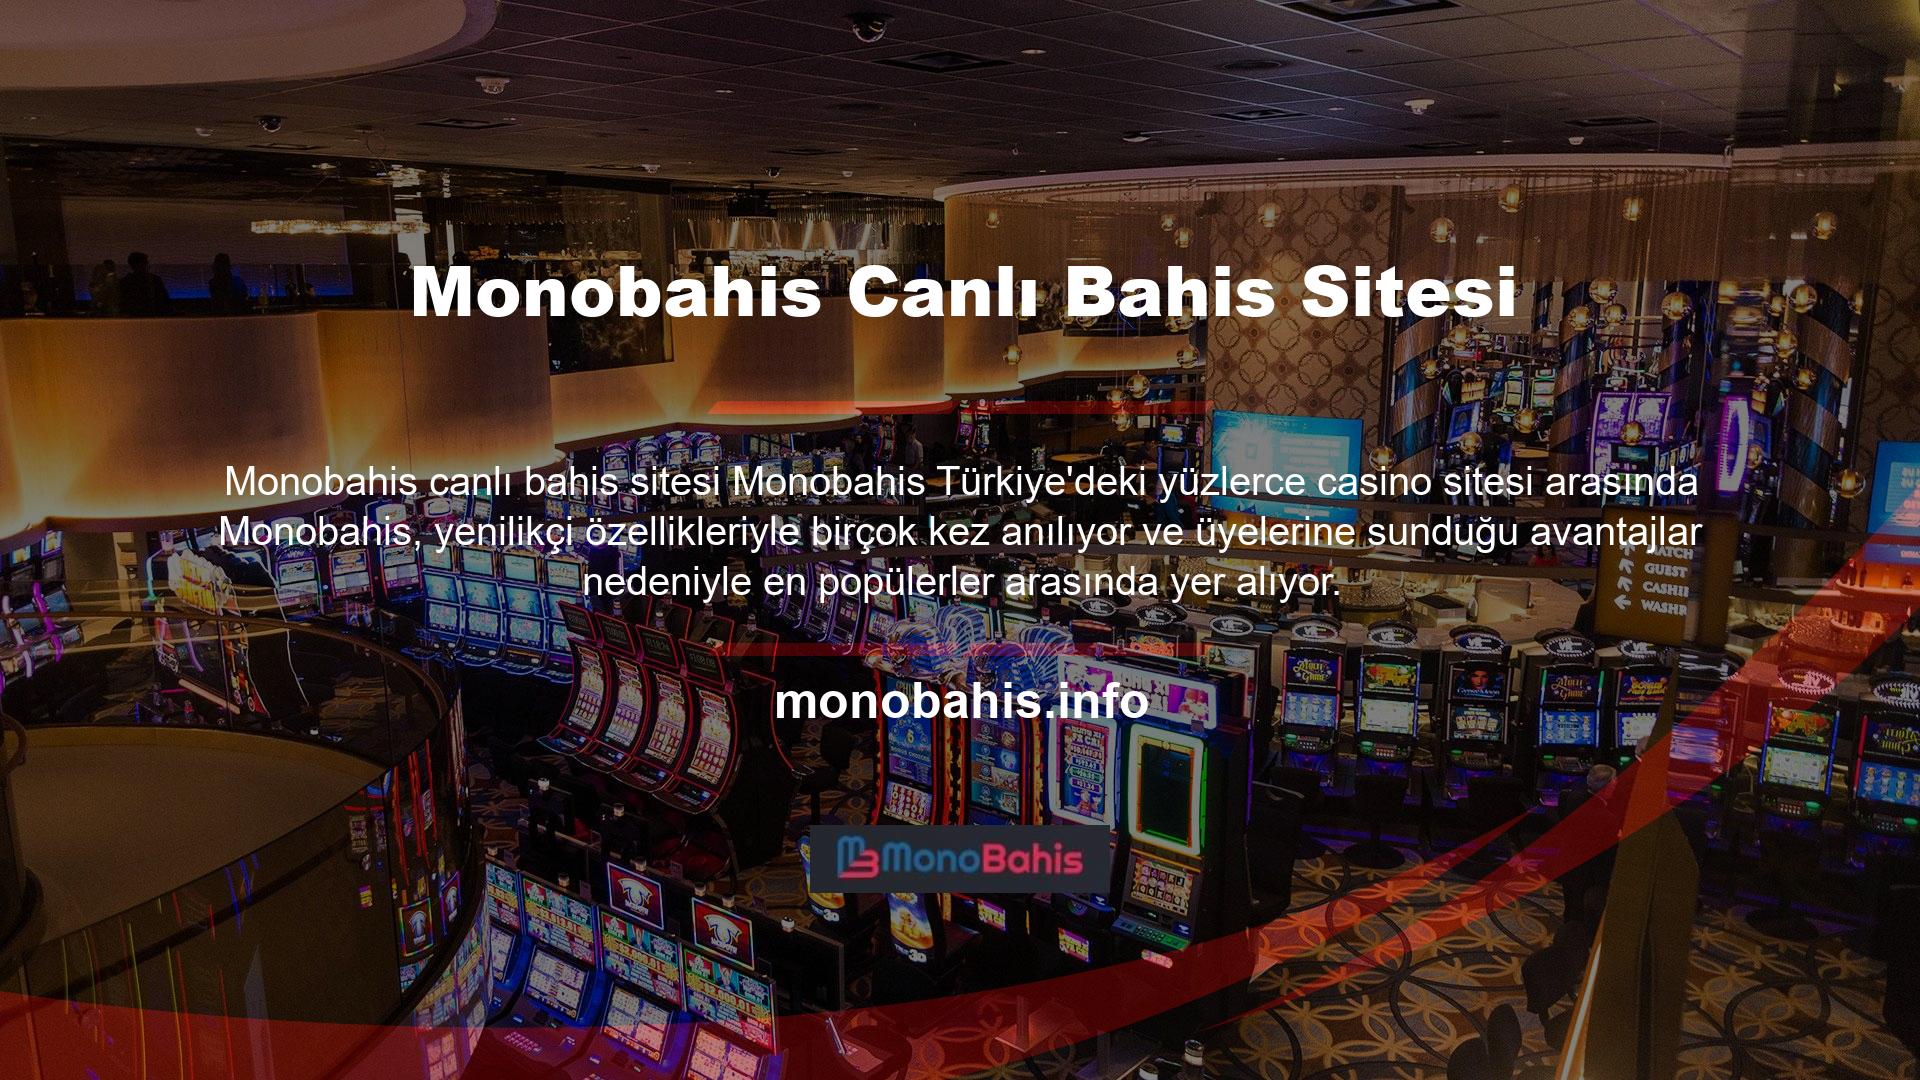 Monobahis ismi yüzlerce sitede sıklıkla duyulmakta ve Türkiye'nin en önemli markalarından biridir